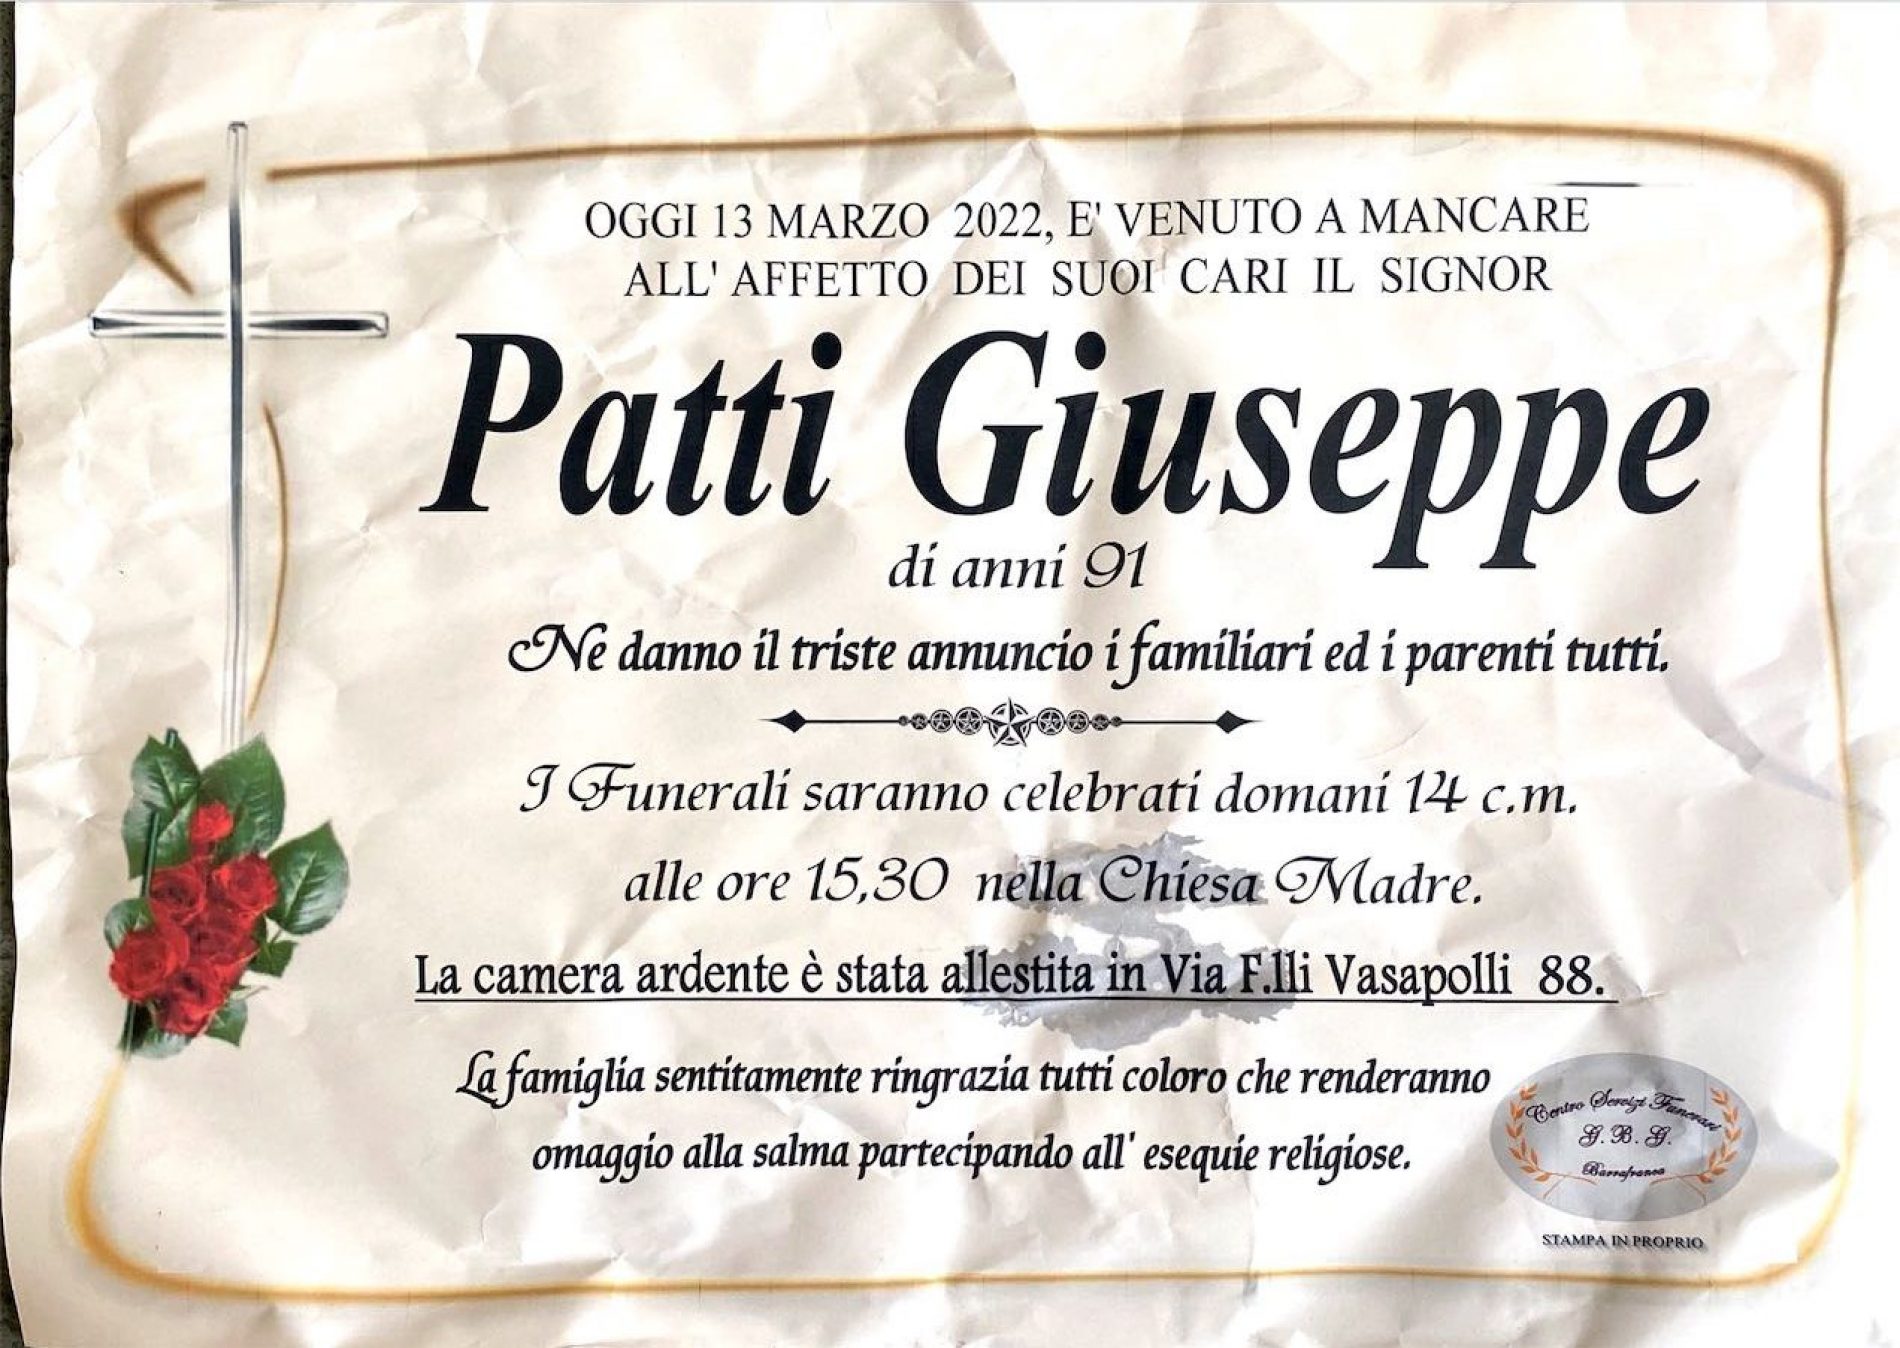 Annuncio servizi funerari agenzia G.B.G. sig. Patti Giuseppe di anni 91